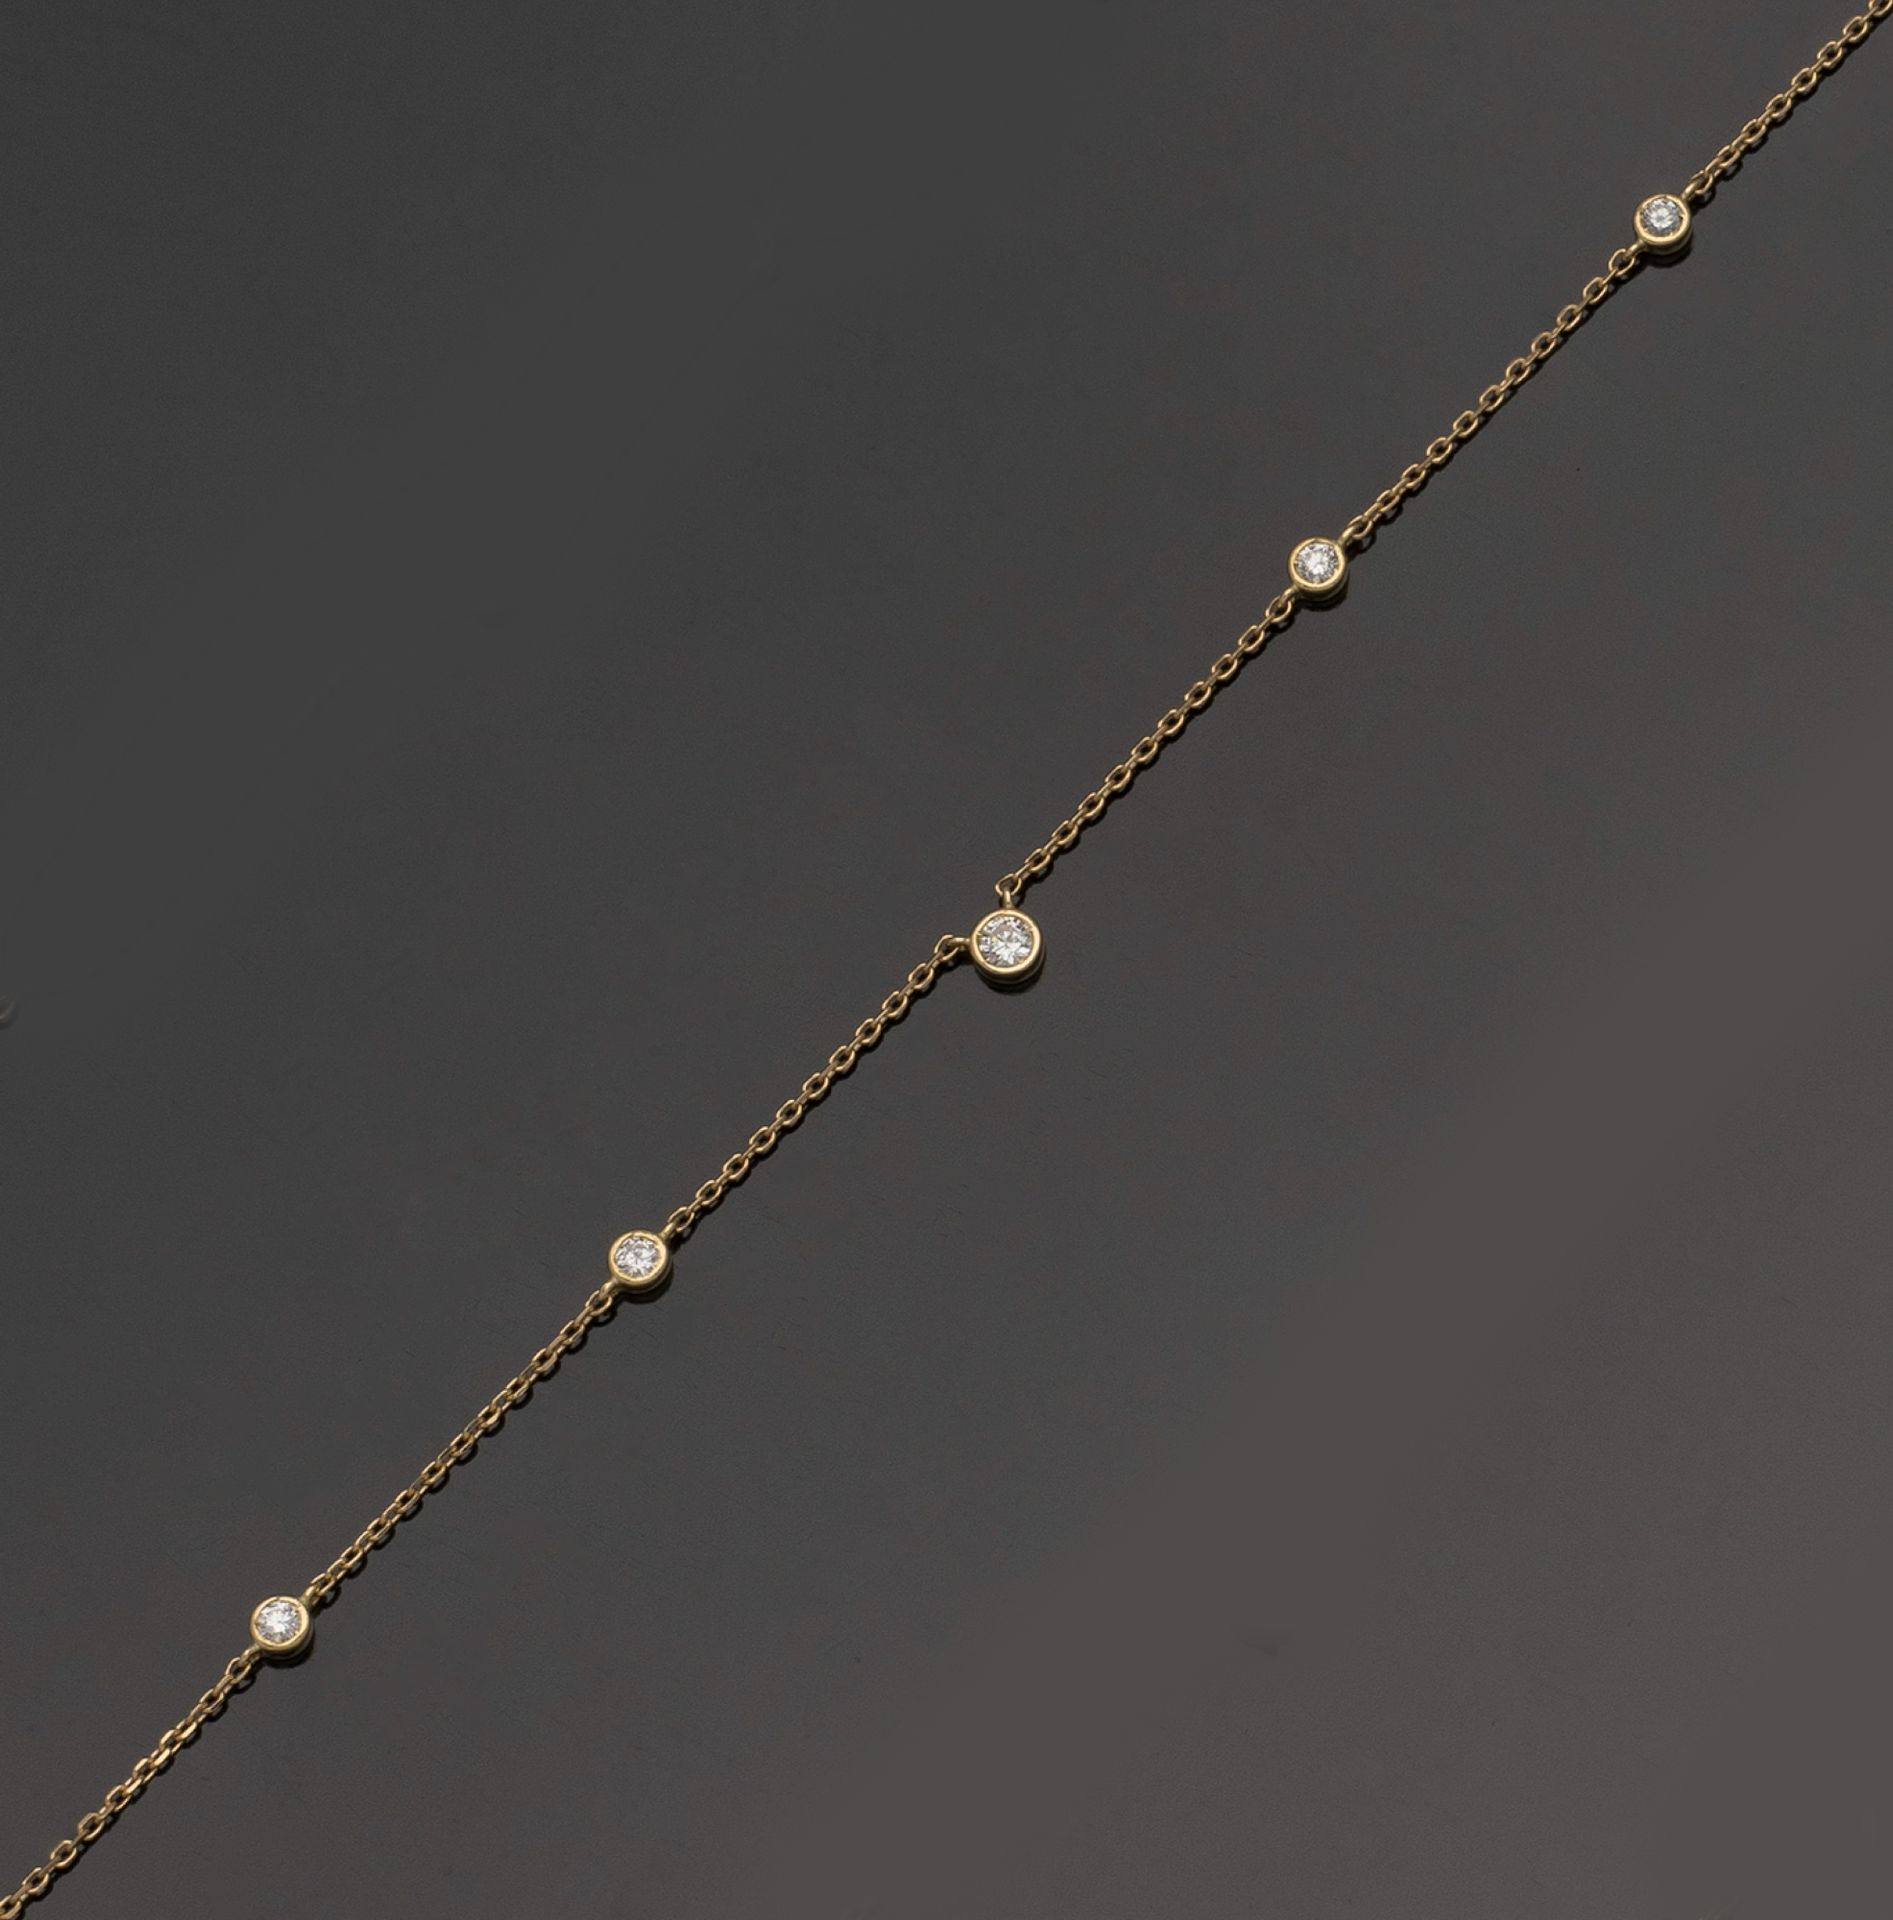 Null 18K（750/1000）黄金项链，封闭式镶嵌五颗明亮式切割钻石，其中中央的一颗最大。弹簧搭扣。
链长：41厘米 - 毛重：2克